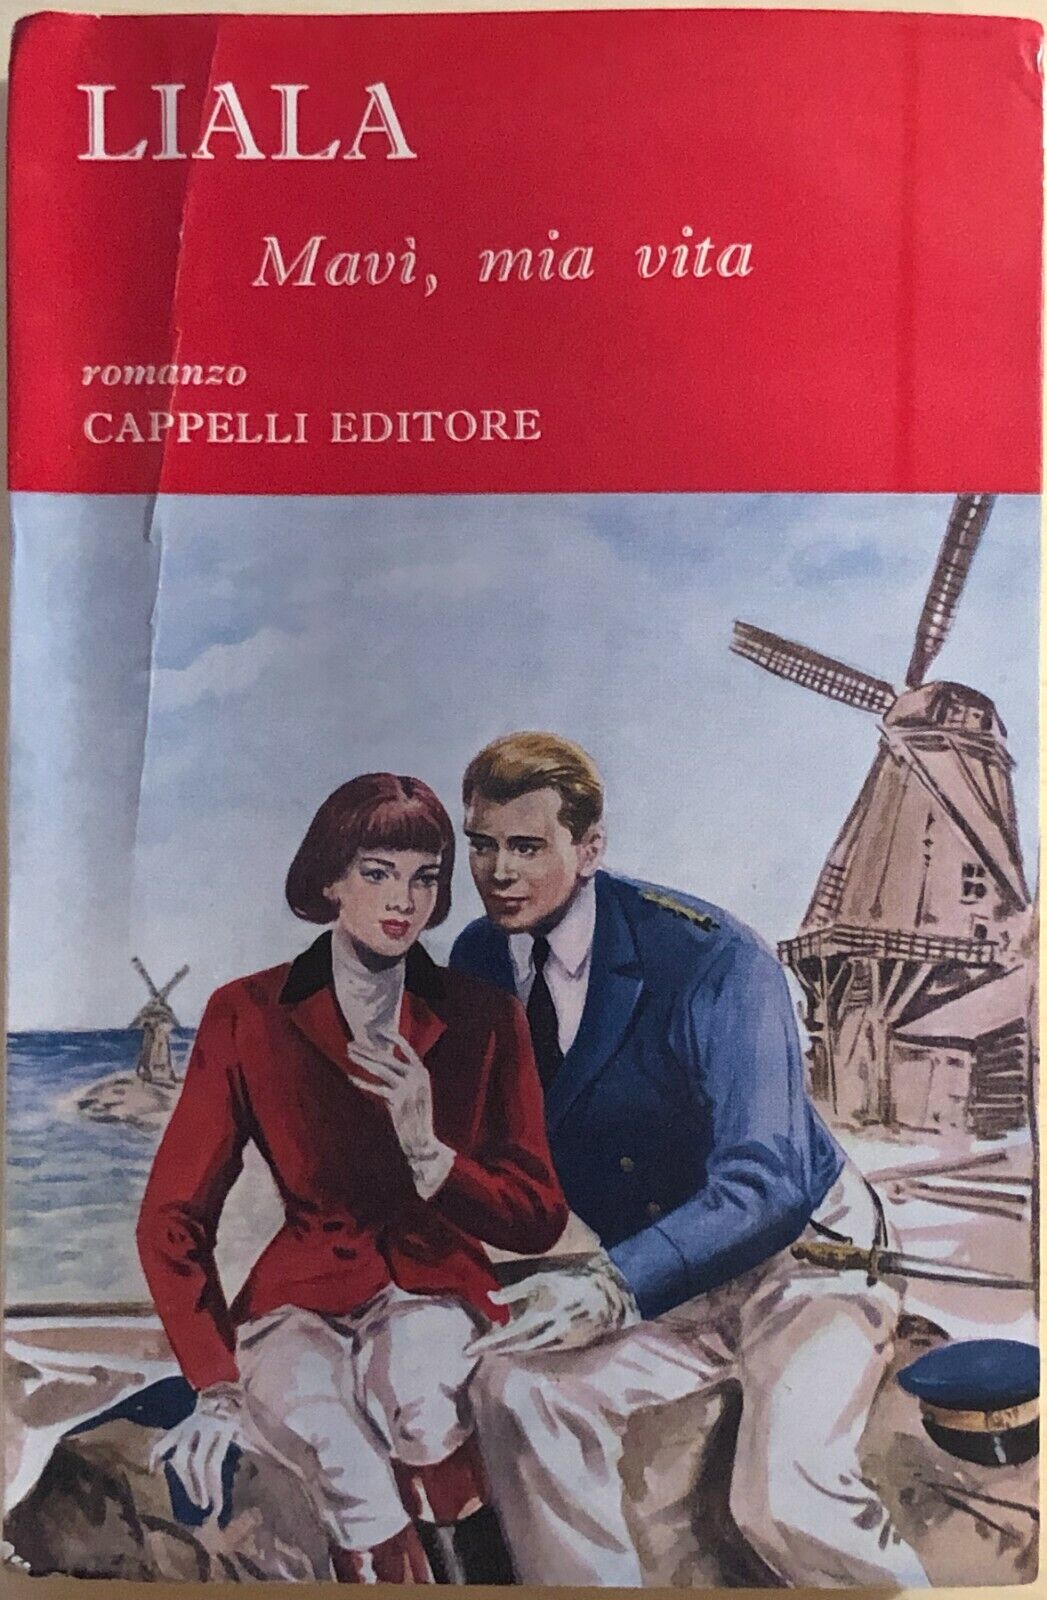 Mav?, mia vita di Liala, 1958, Cappelli Editore